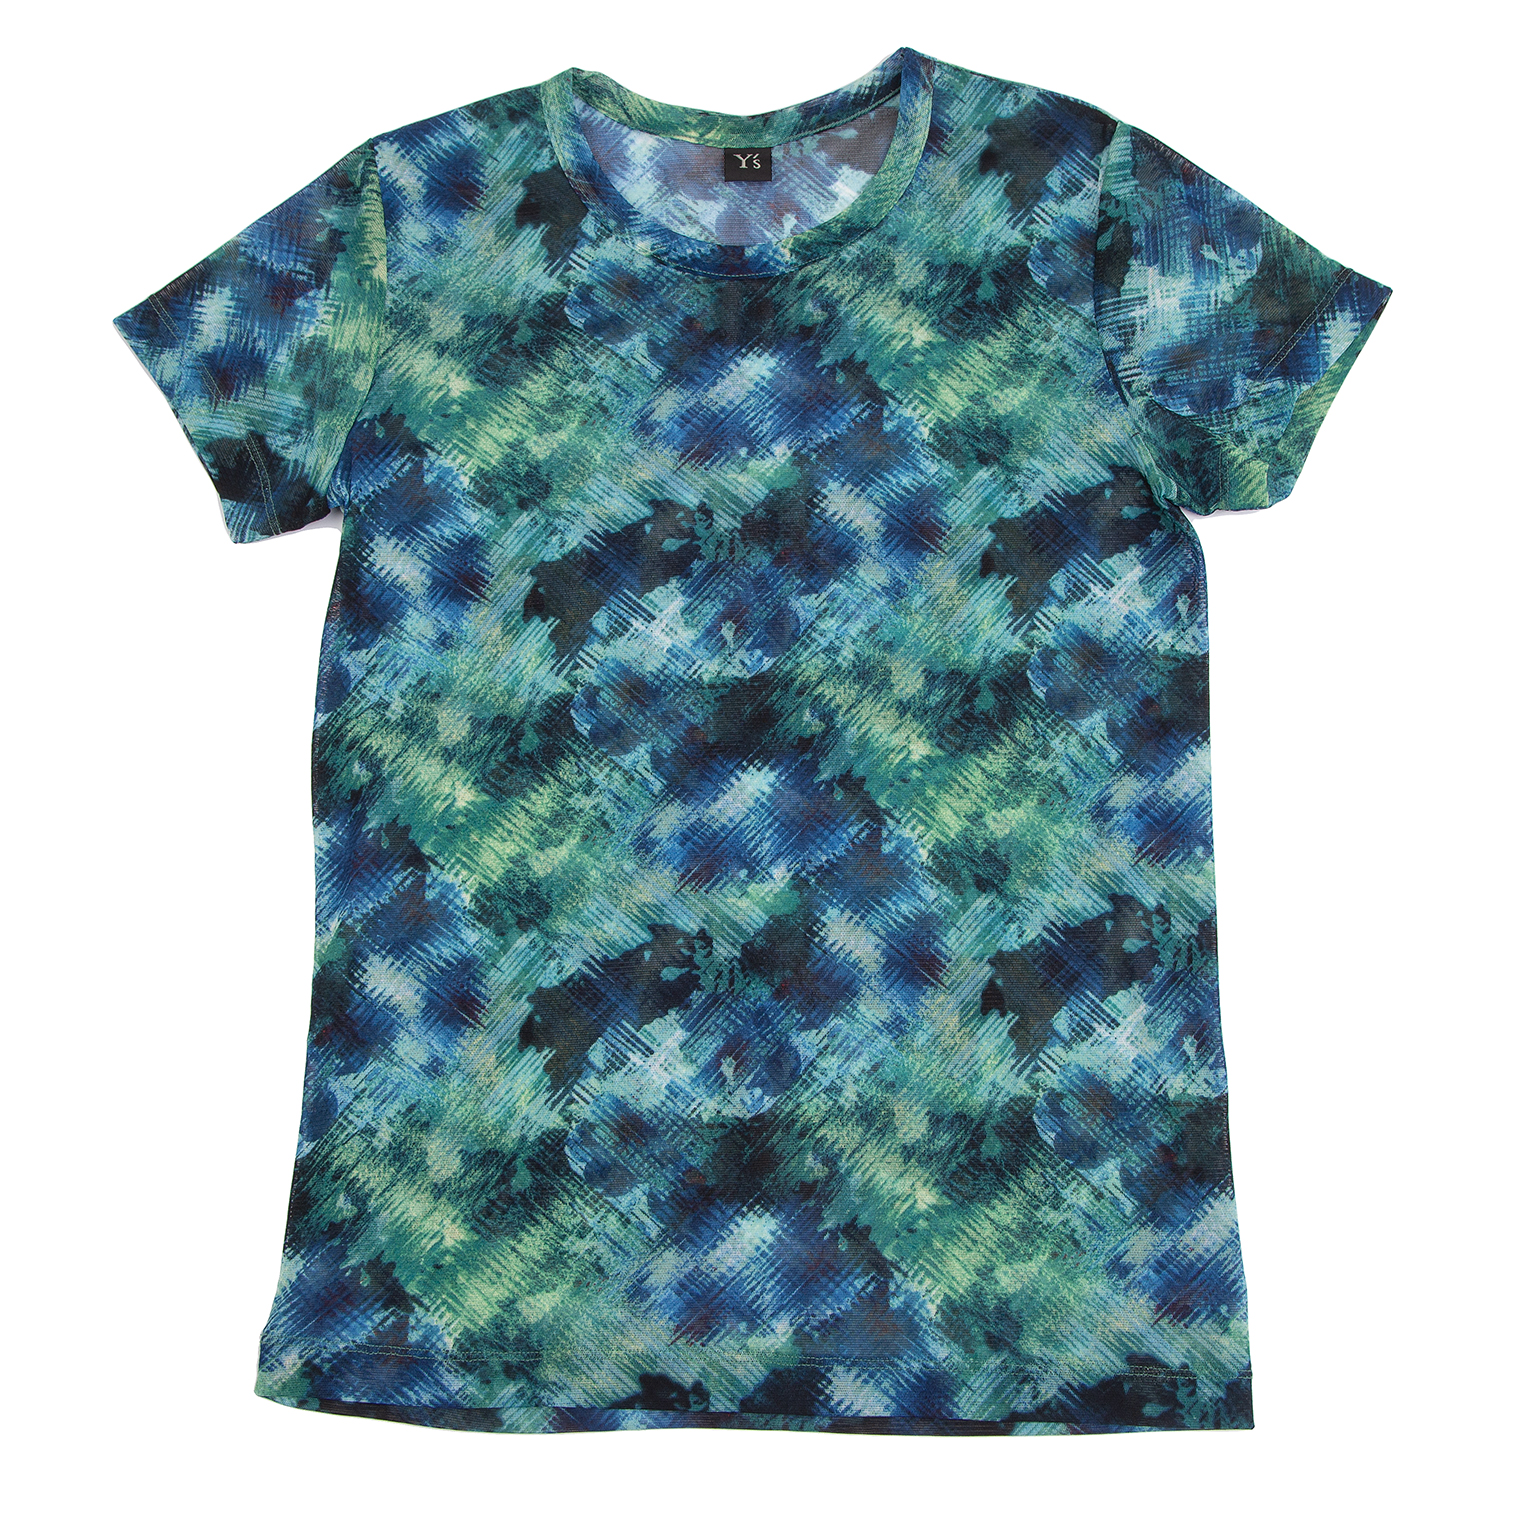 ワイズY's かすれプリントメッシュTシャツ 青緑2